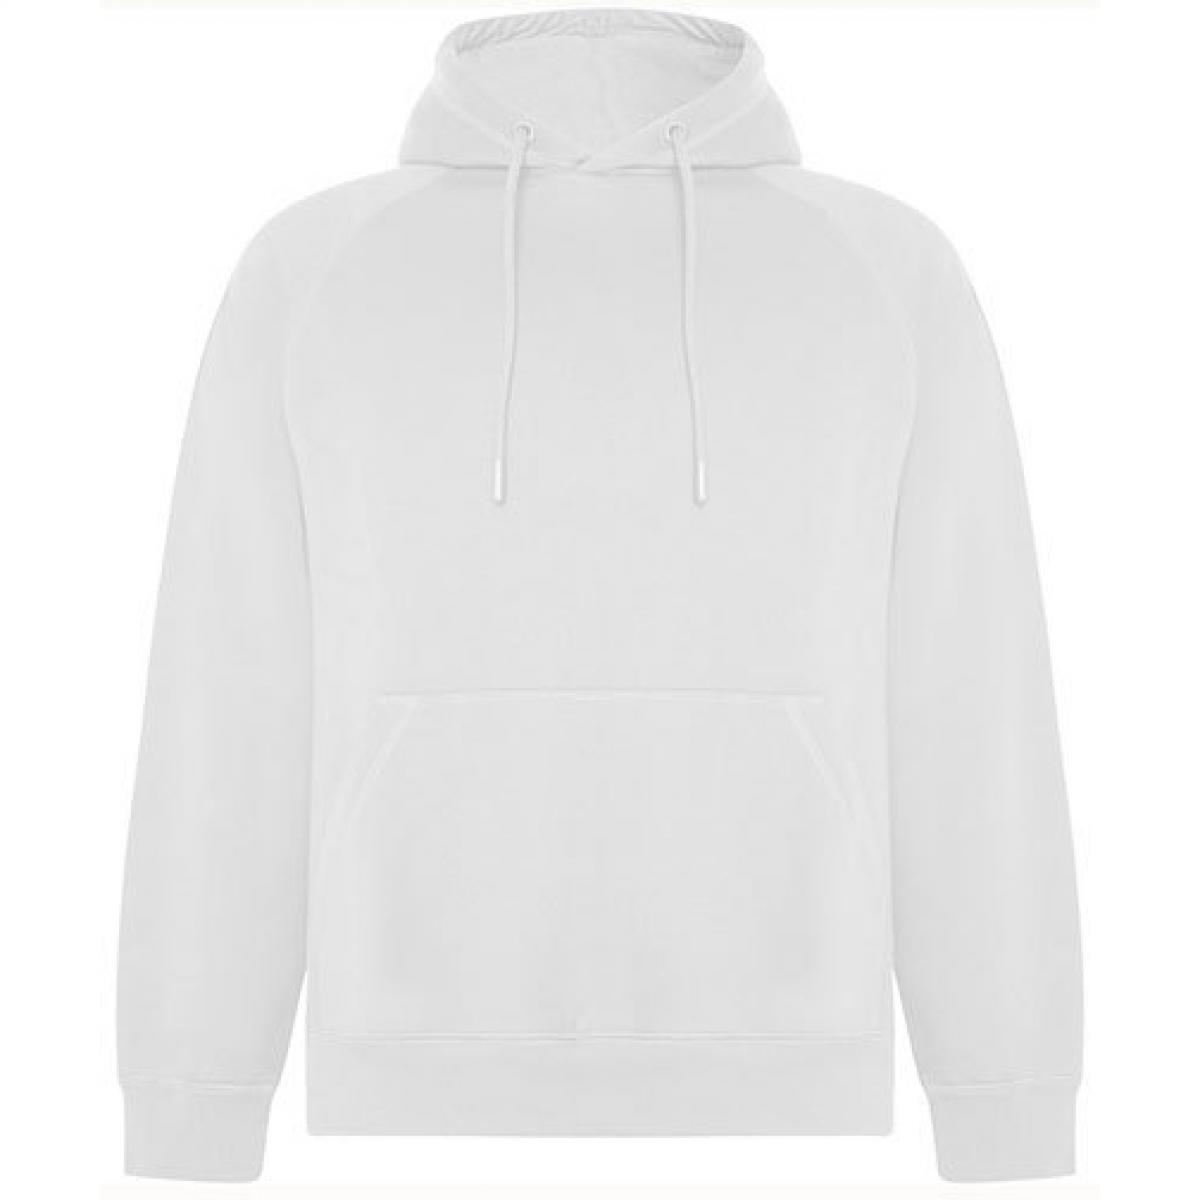 Hersteller: Roly Eco Herstellernummer: SU1074 Artikelbezeichnung: Vinson Organic Hooded Sweatshirt - Unisex Kapuzenpullover Farbe: White 01